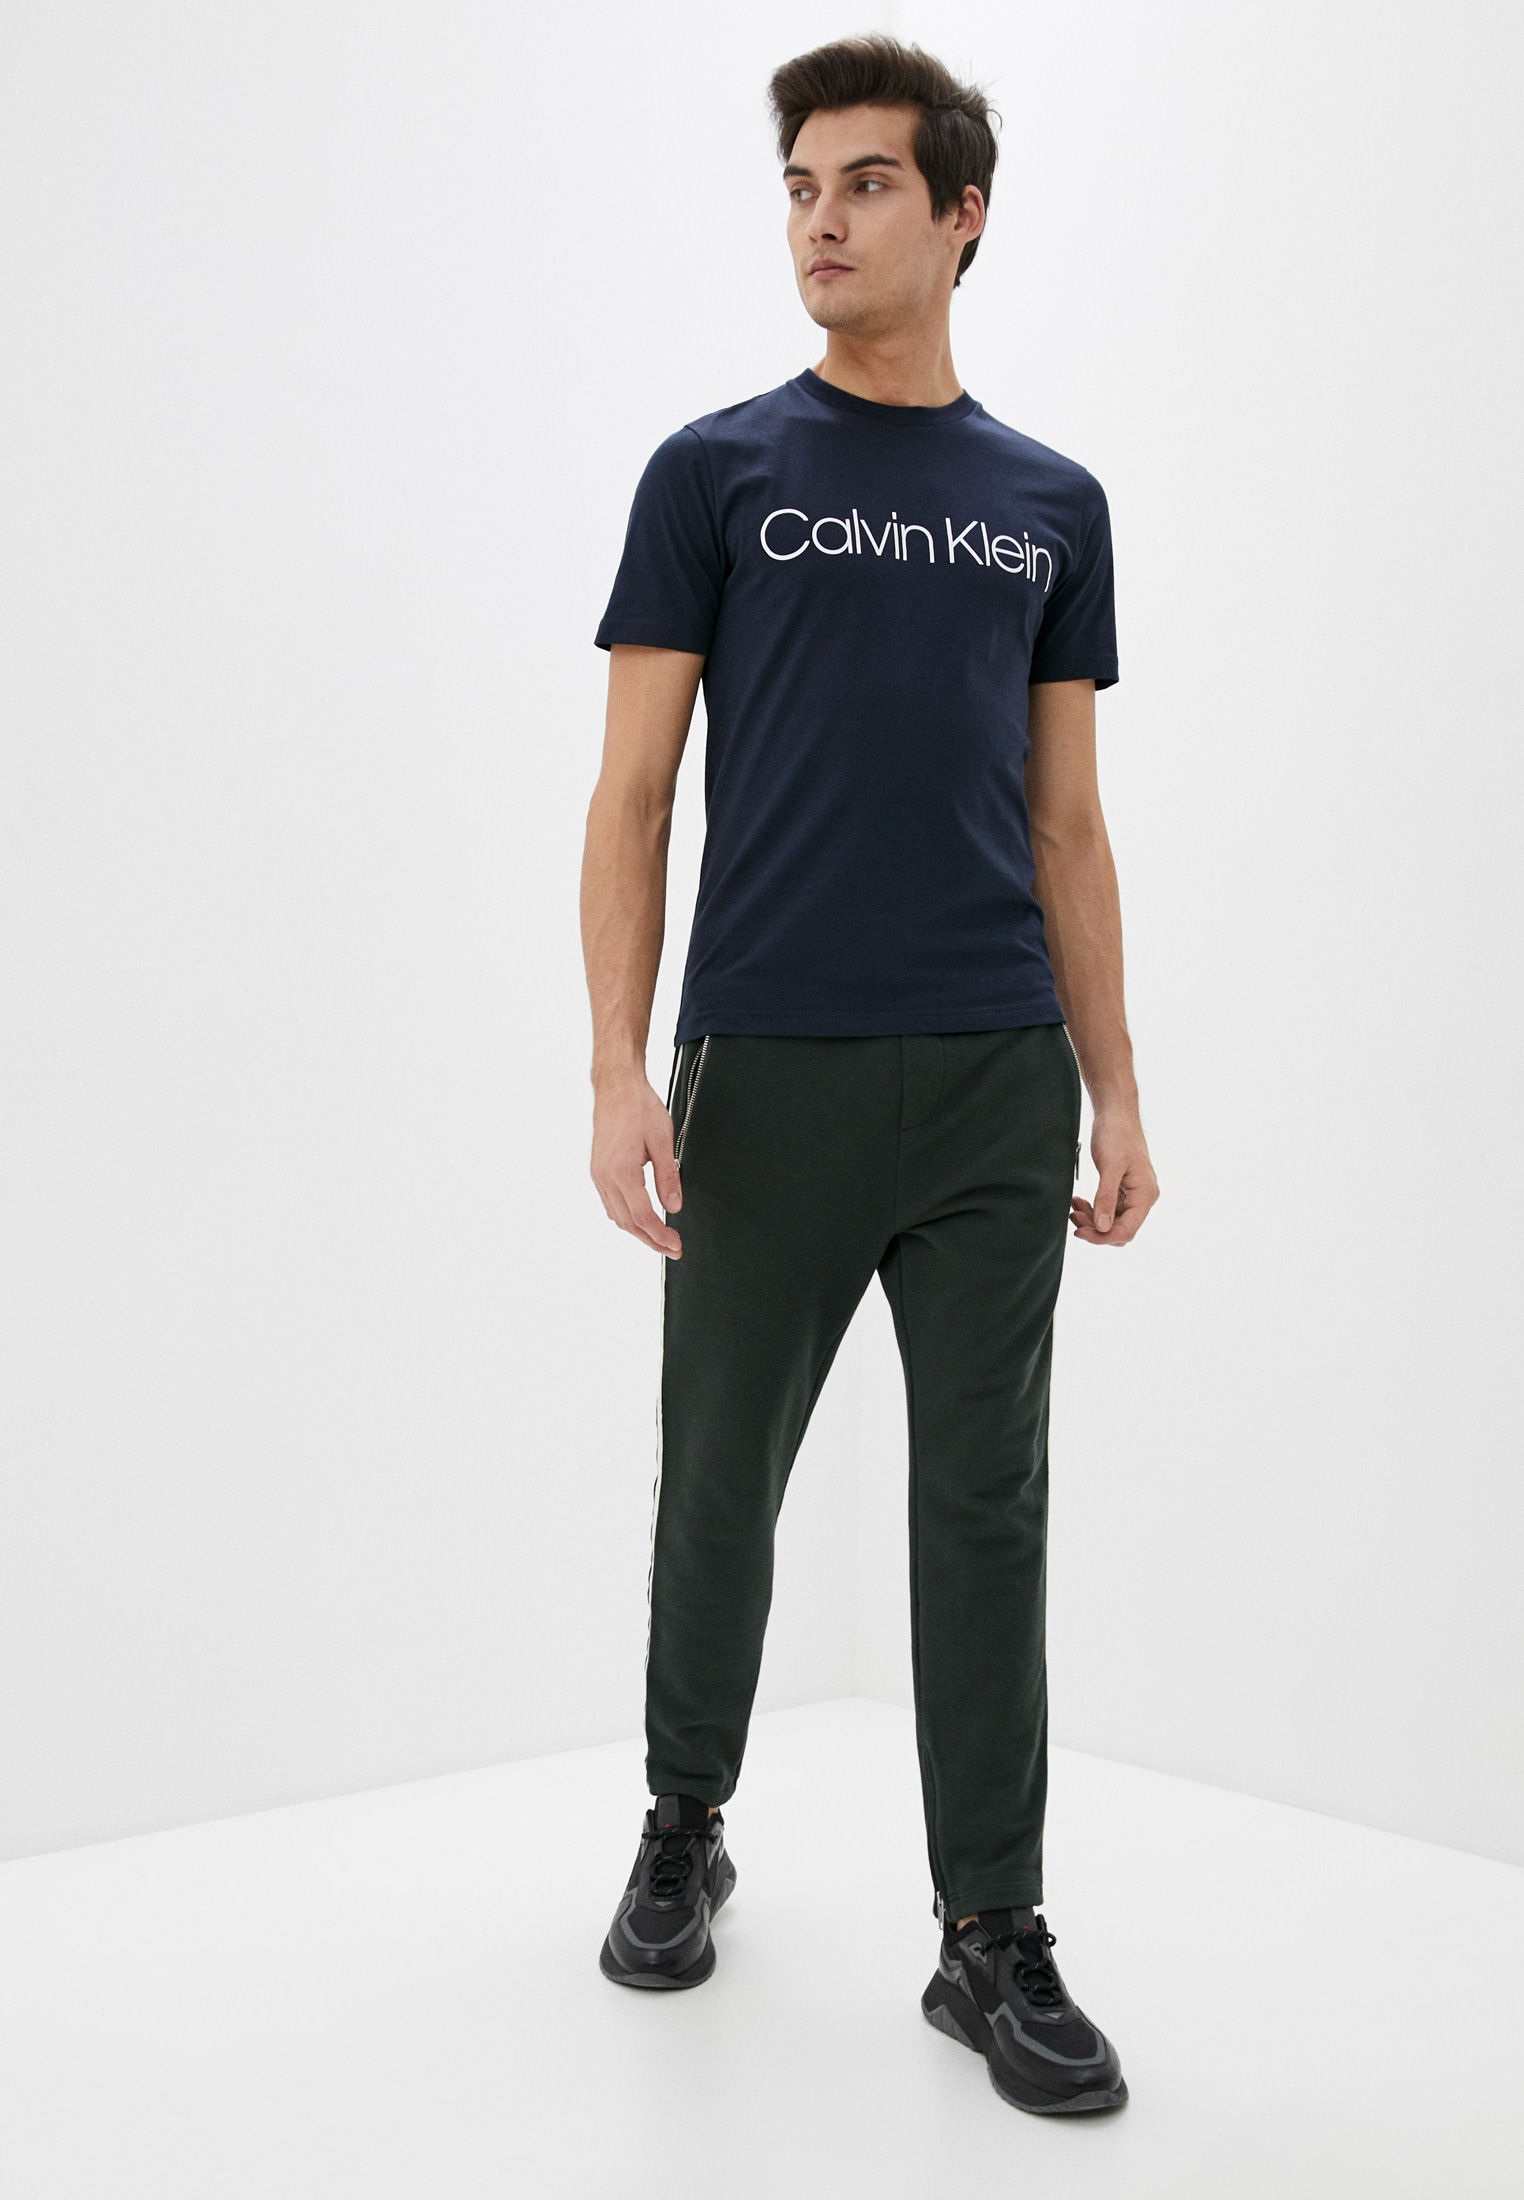 Мужская футболка Calvin Klein (Кельвин Кляйн) k10k104063: изображение 2